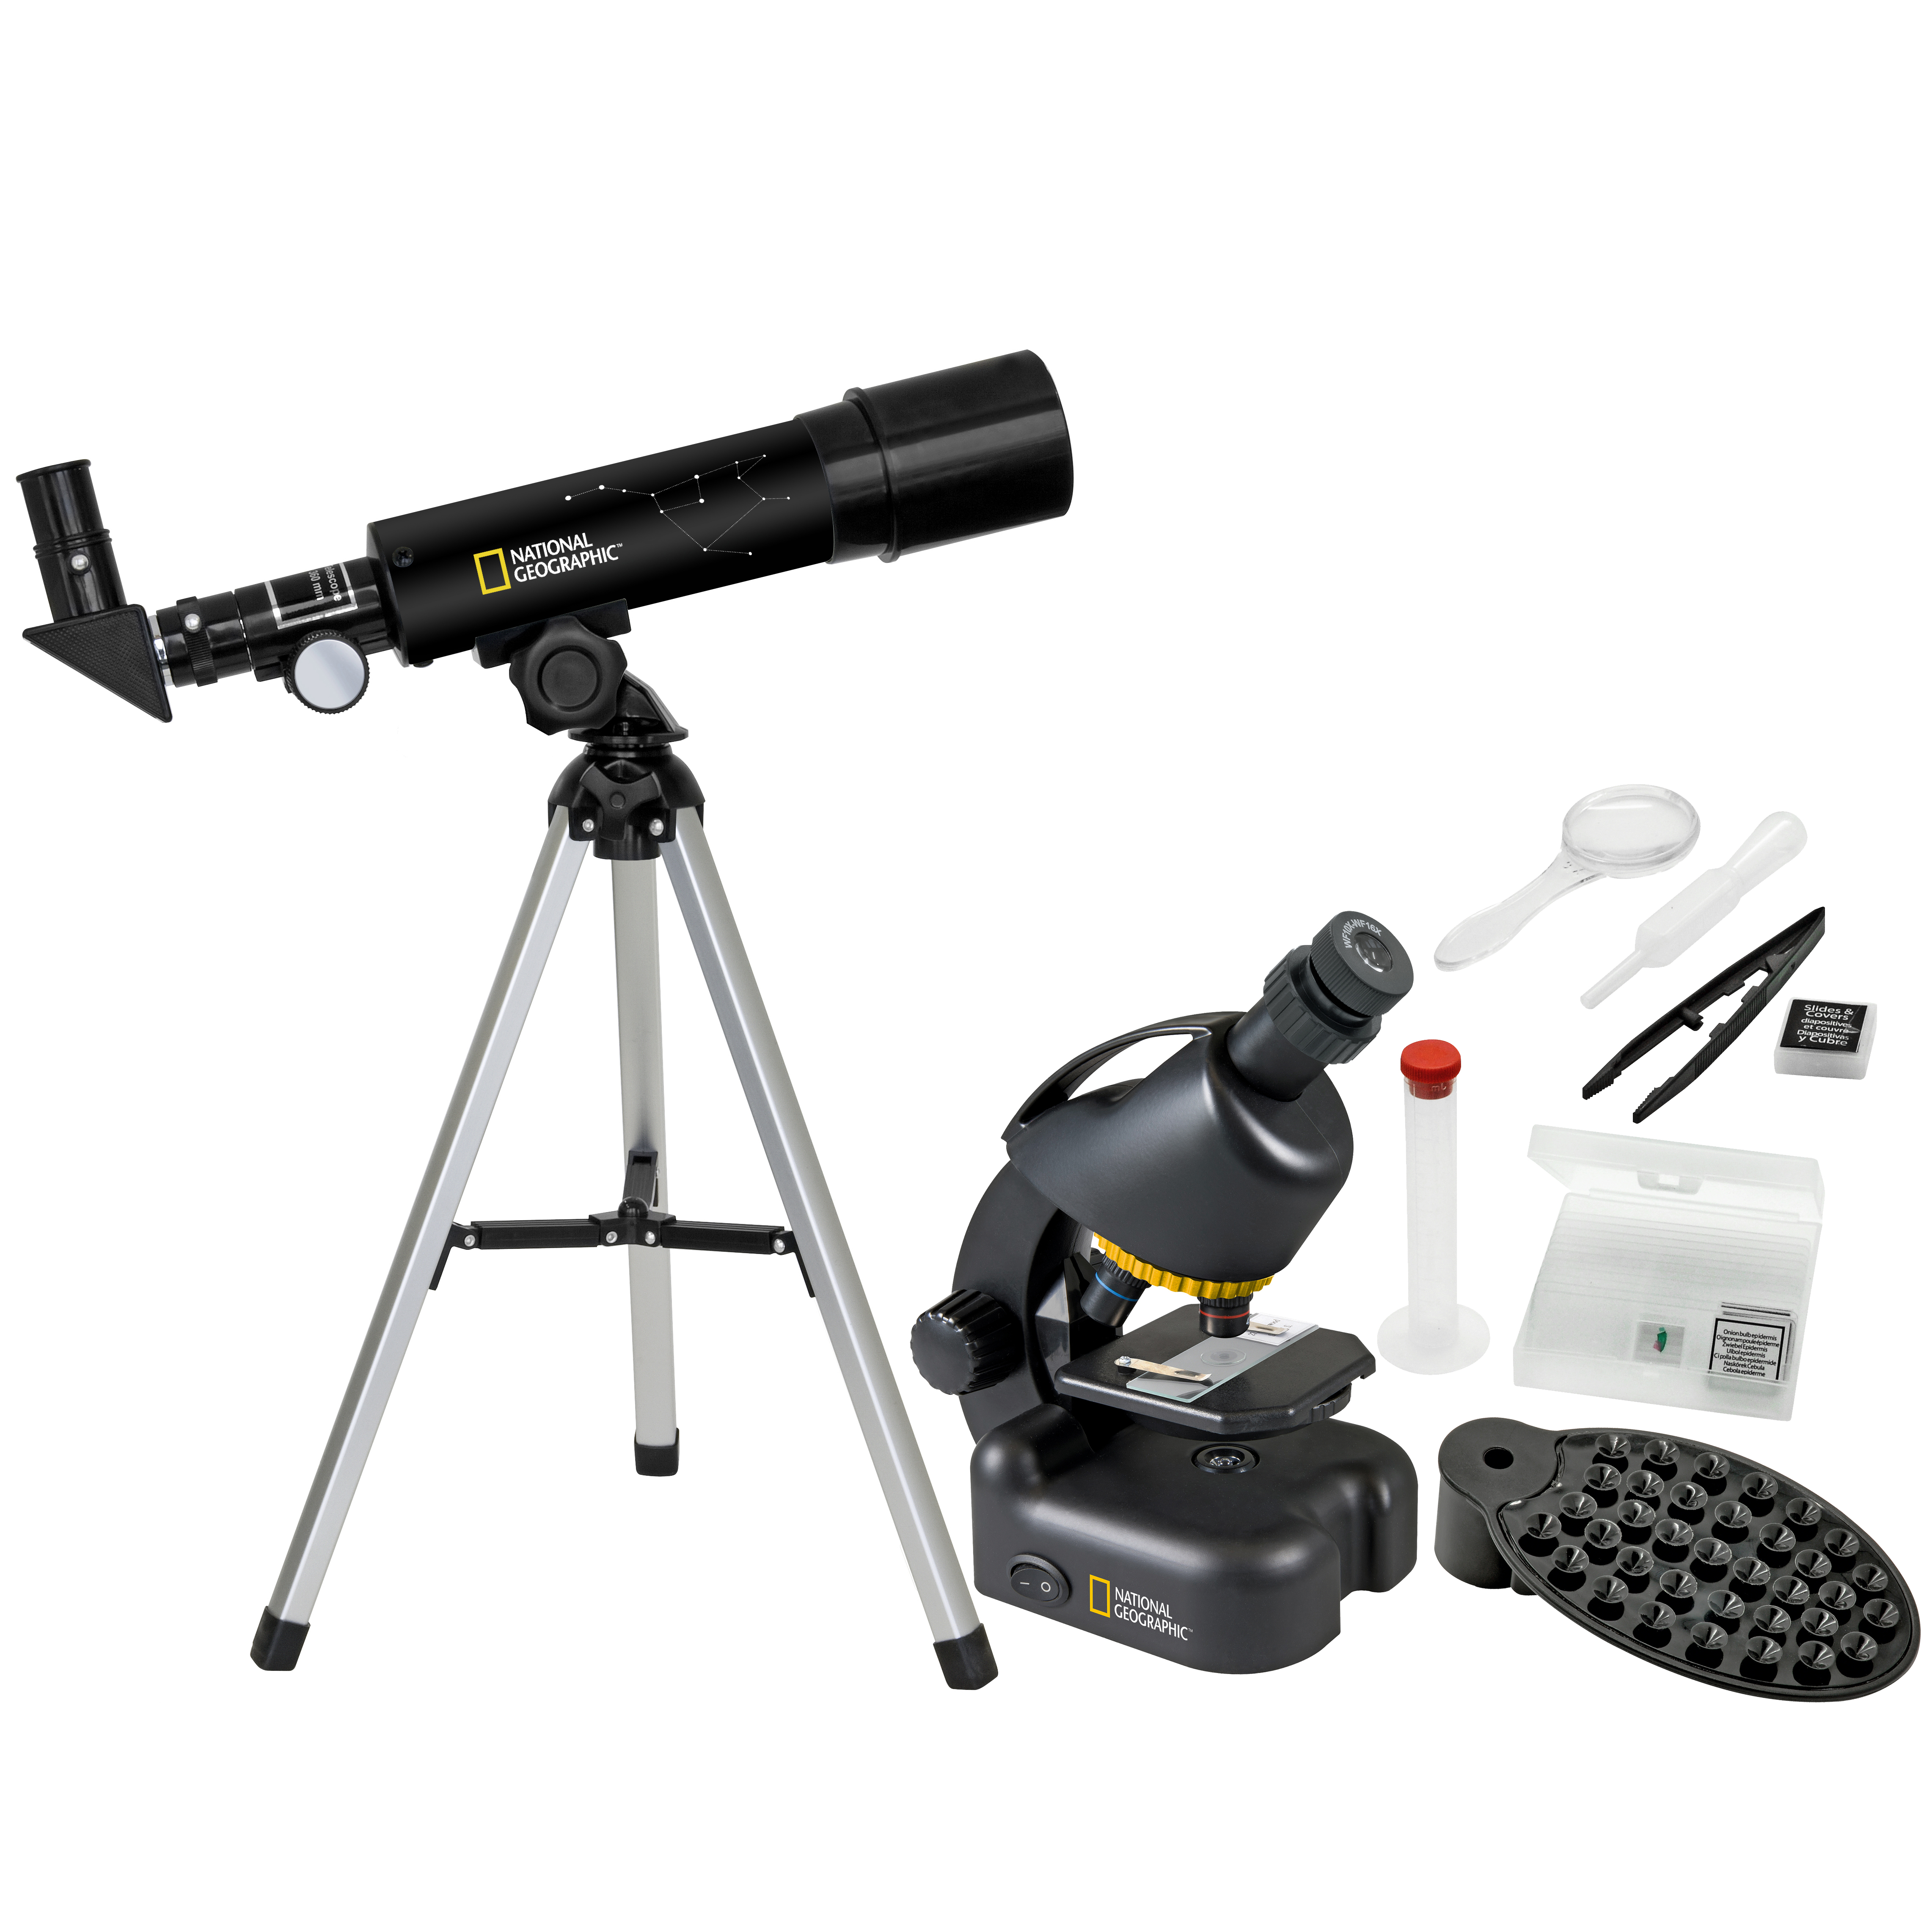 NATIONAL GEOGRAPHIC Telescopio compacto + microscopio con soporte para el Smartphone